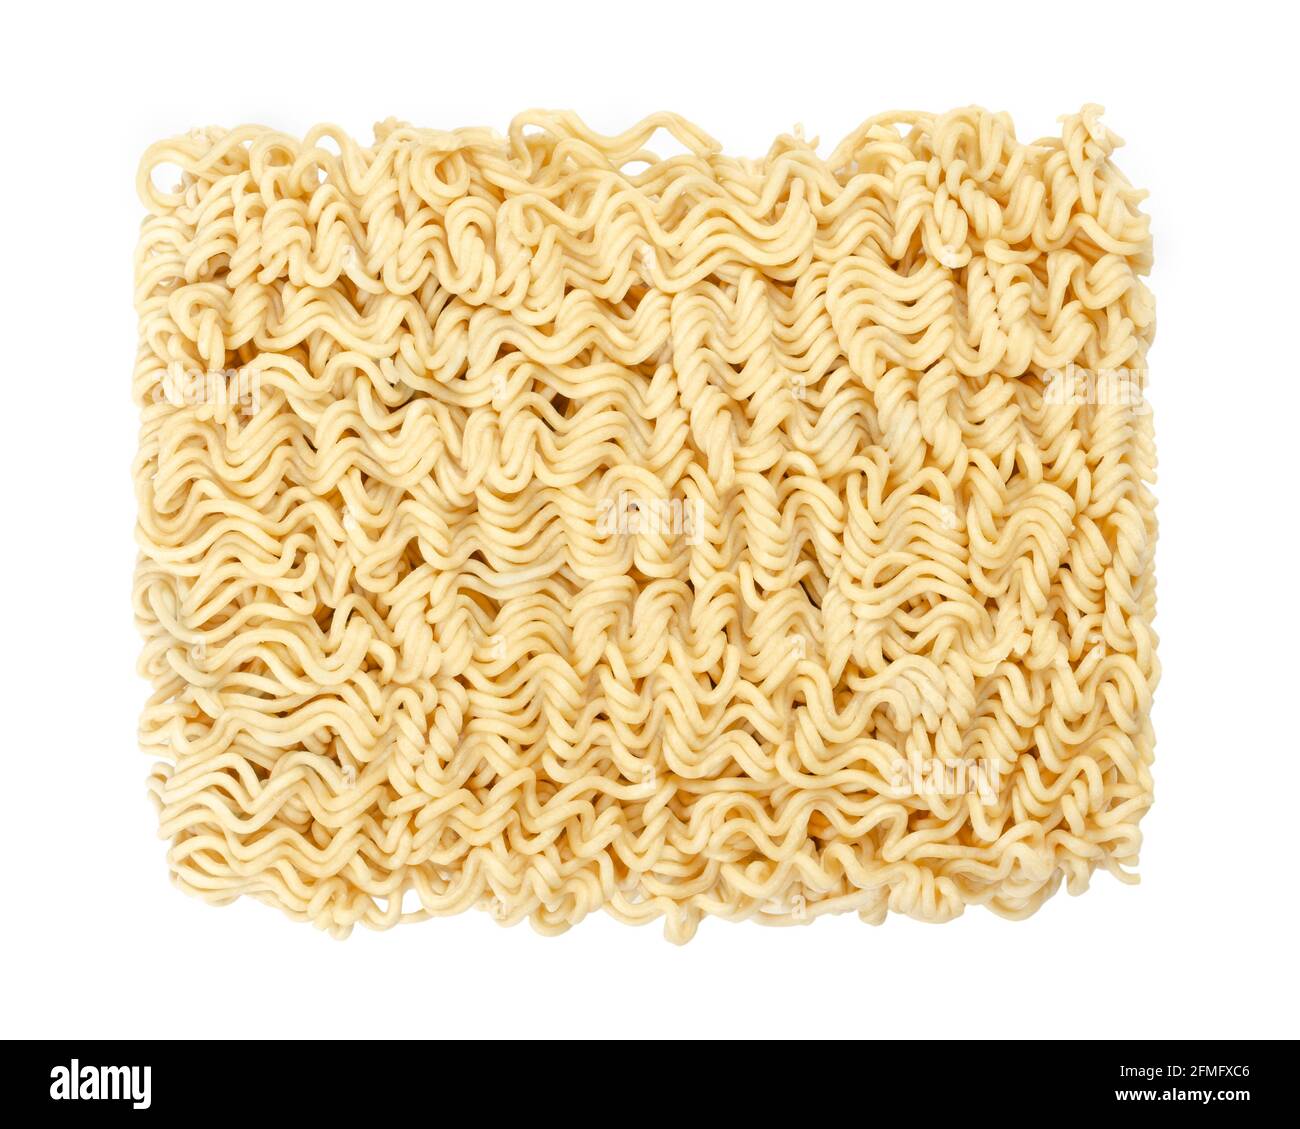 Blocco di noodle istantaneo essiccato, dall'alto. I ramen istantanei sono noodle venduti in forma di blocco precotti ed essiccati, da immergere in acqua bollente. Foto Stock